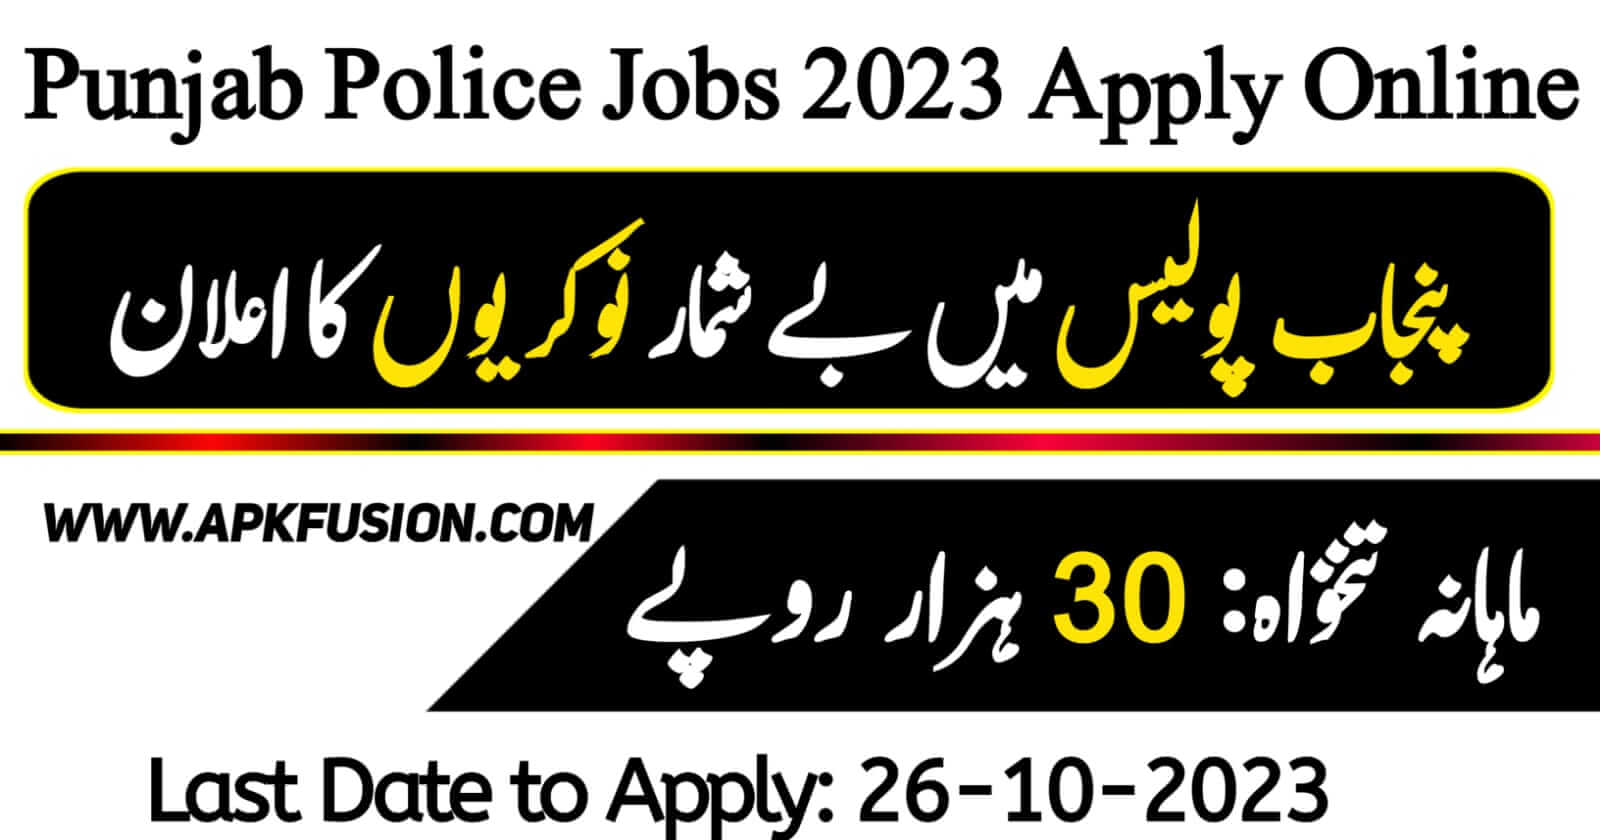 Punjab Police Jobs 2023 - Punjab Police Online Apply